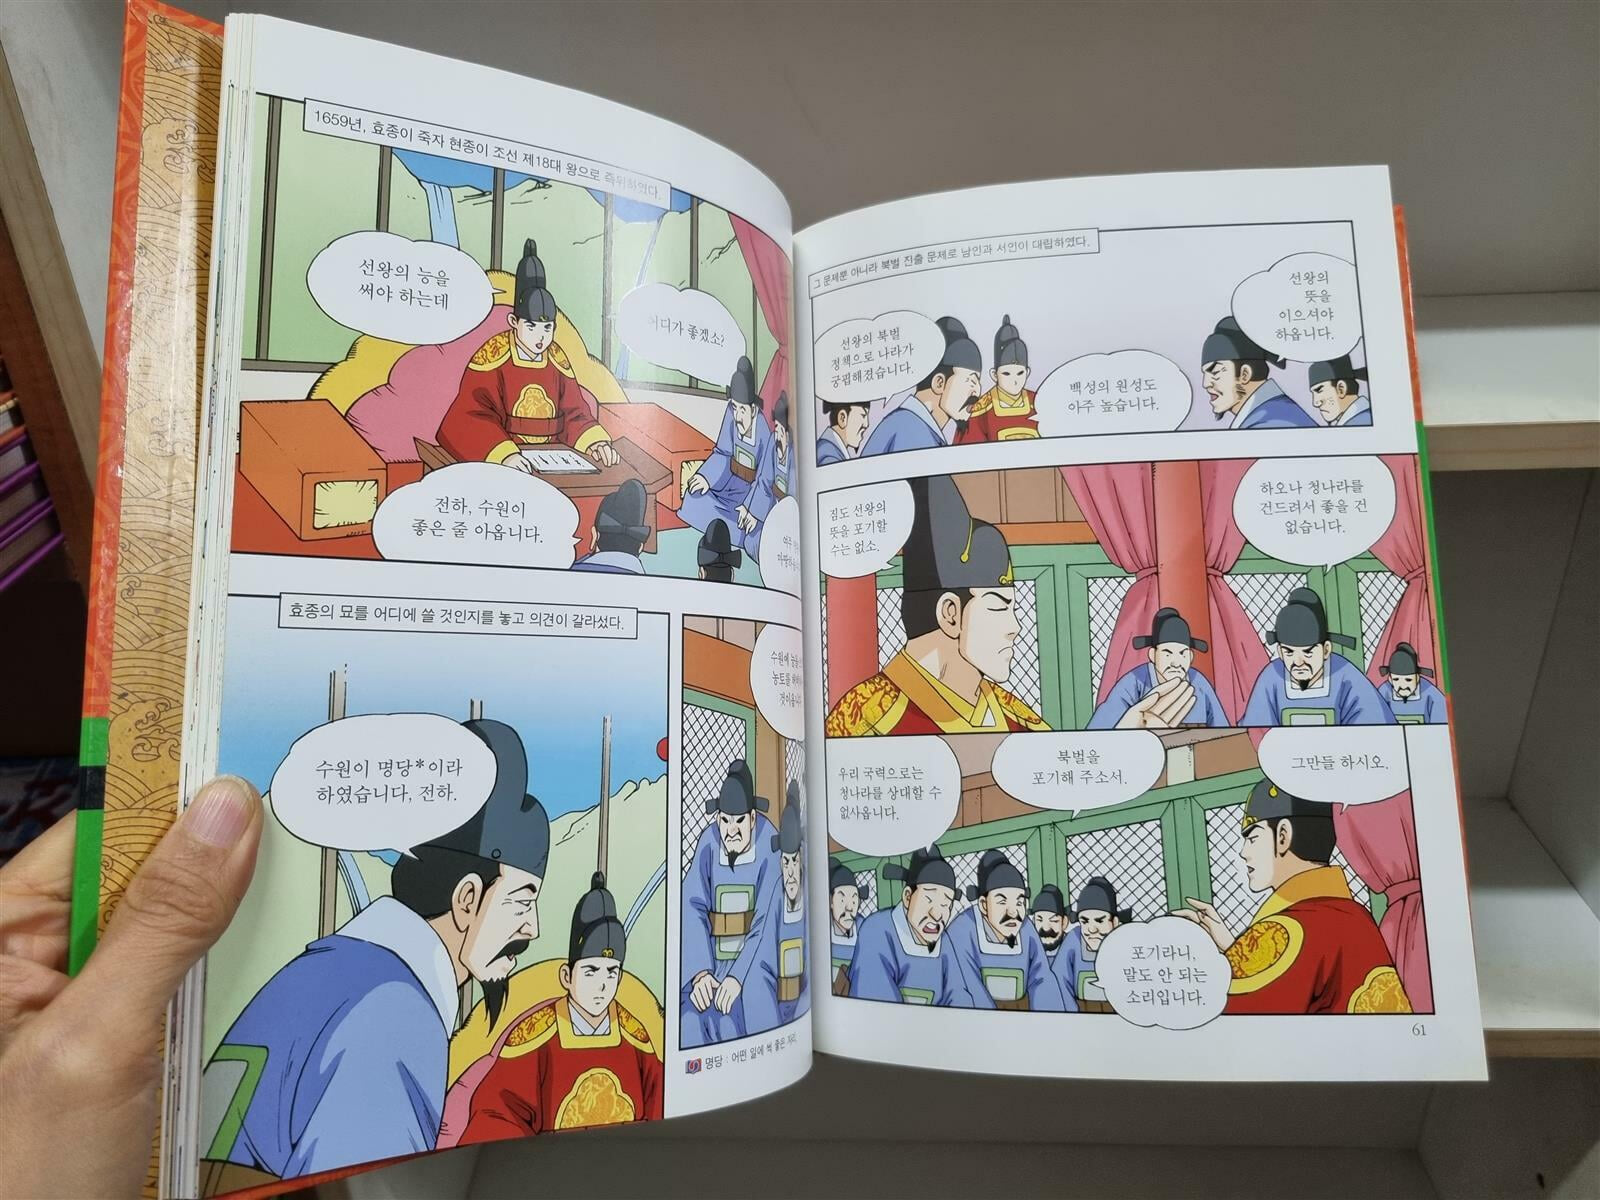 [중고] [컬러학습만화] 교과서와 함께하는 한국역사탐구 Think Wide (본책42권+별책1) 총43권 전권 세트 -- 상세사진 올림 상급